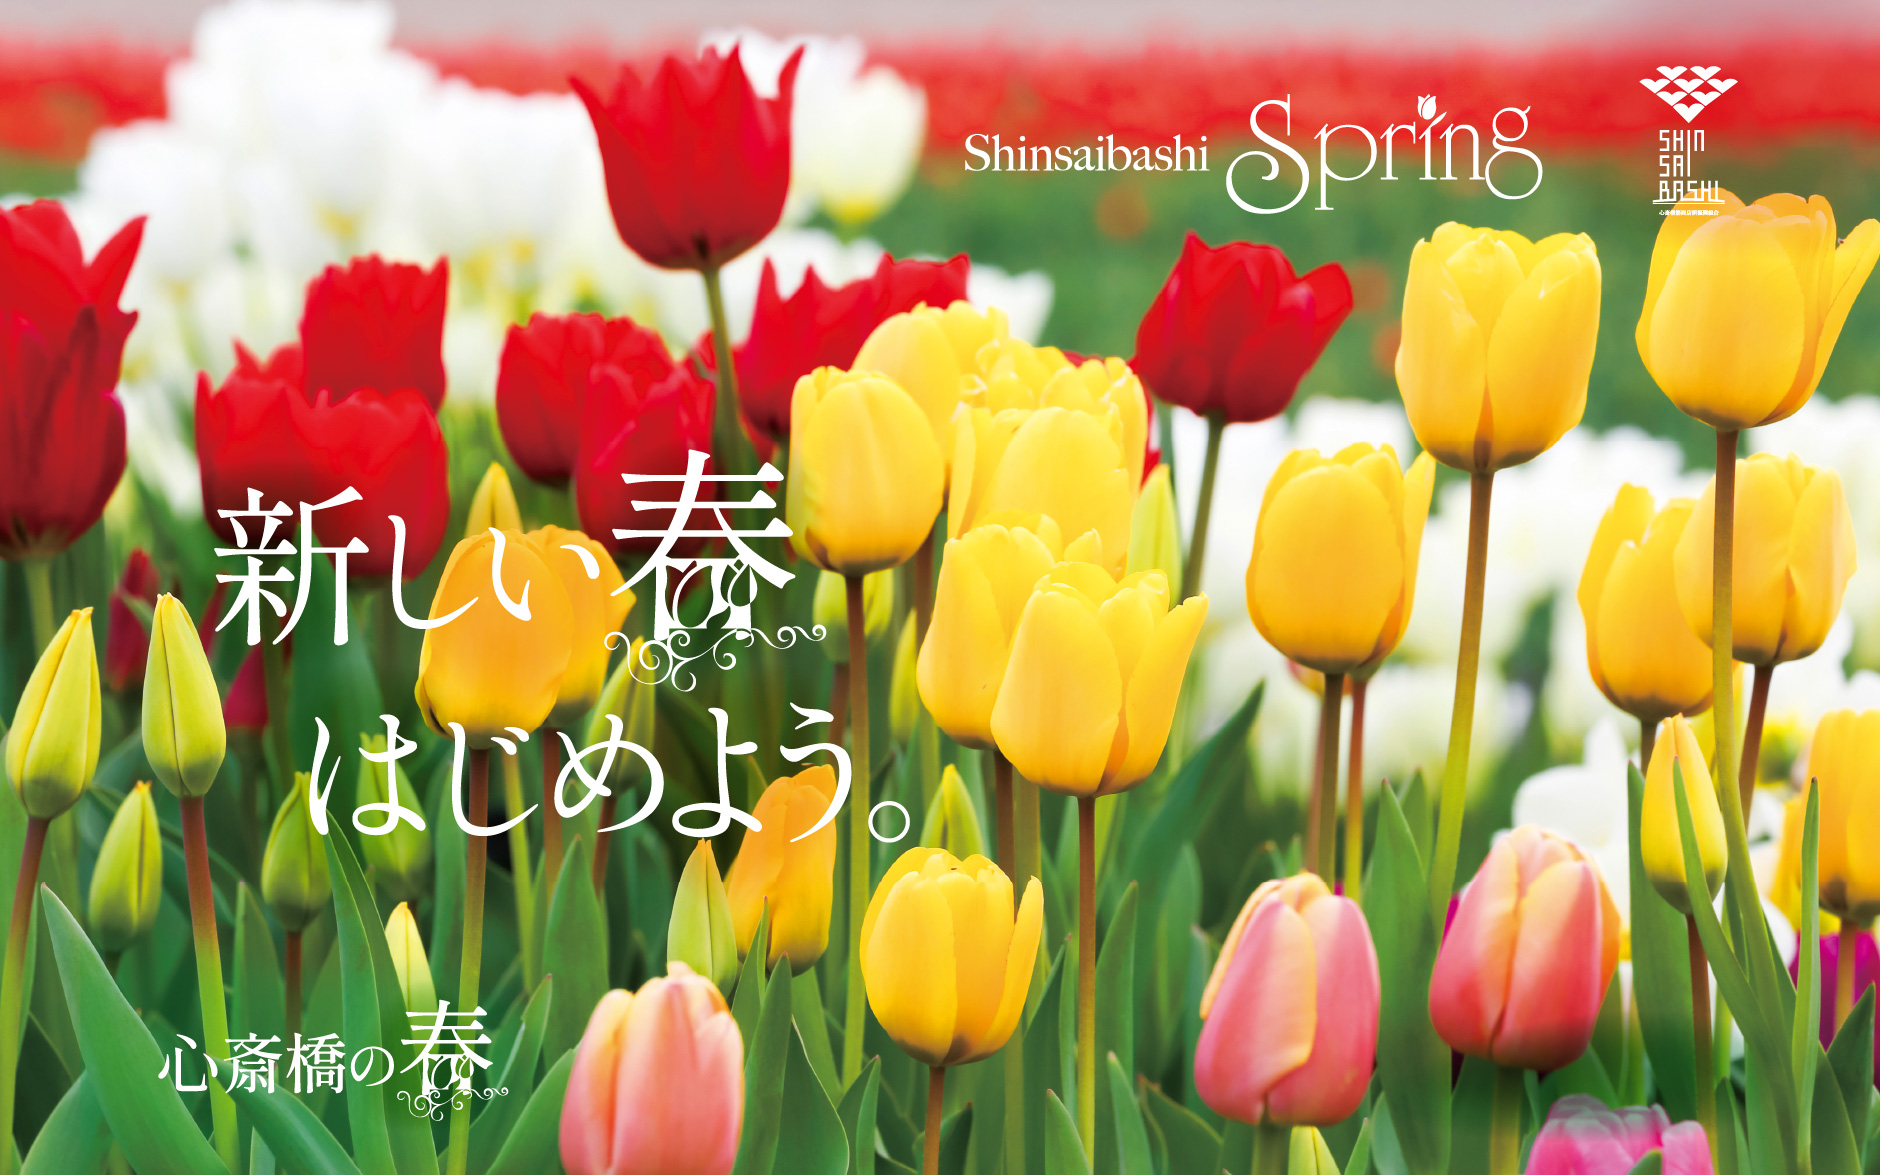 shinsaibashi spring 新しい春 始めよう